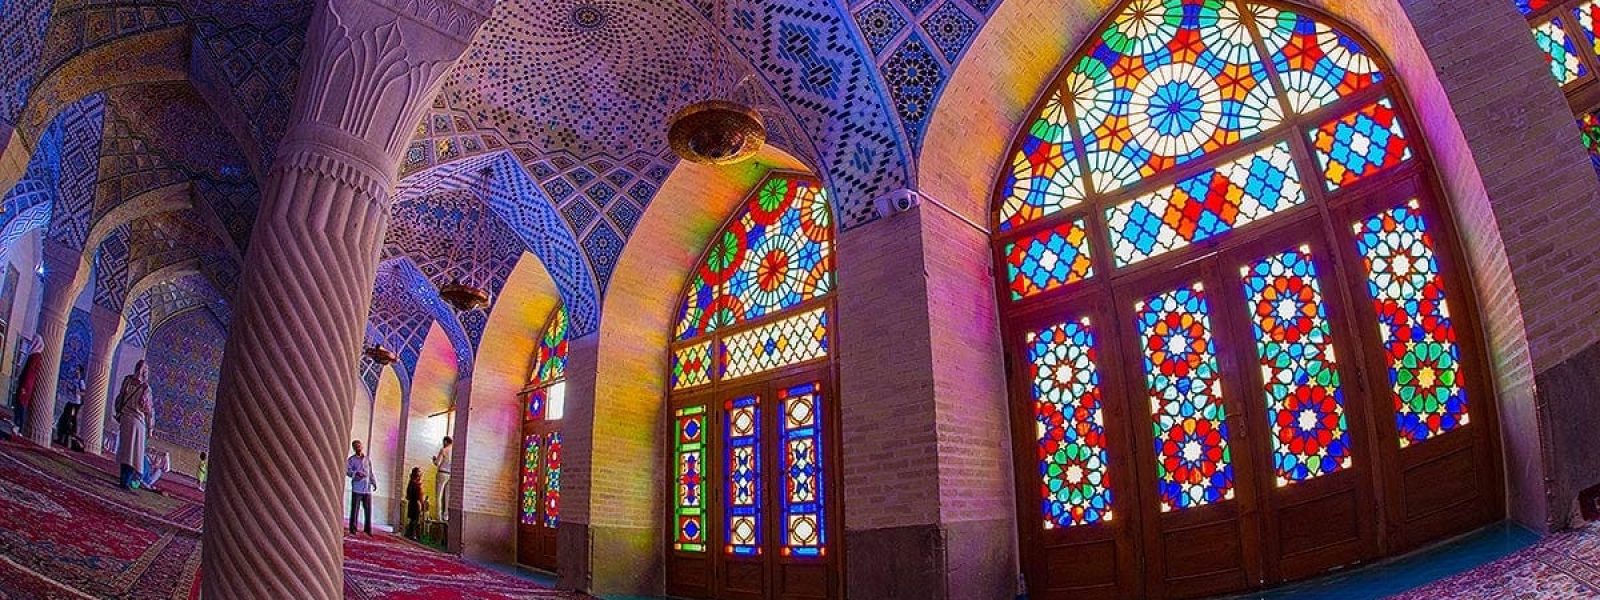 redenen om iran te bezoeken